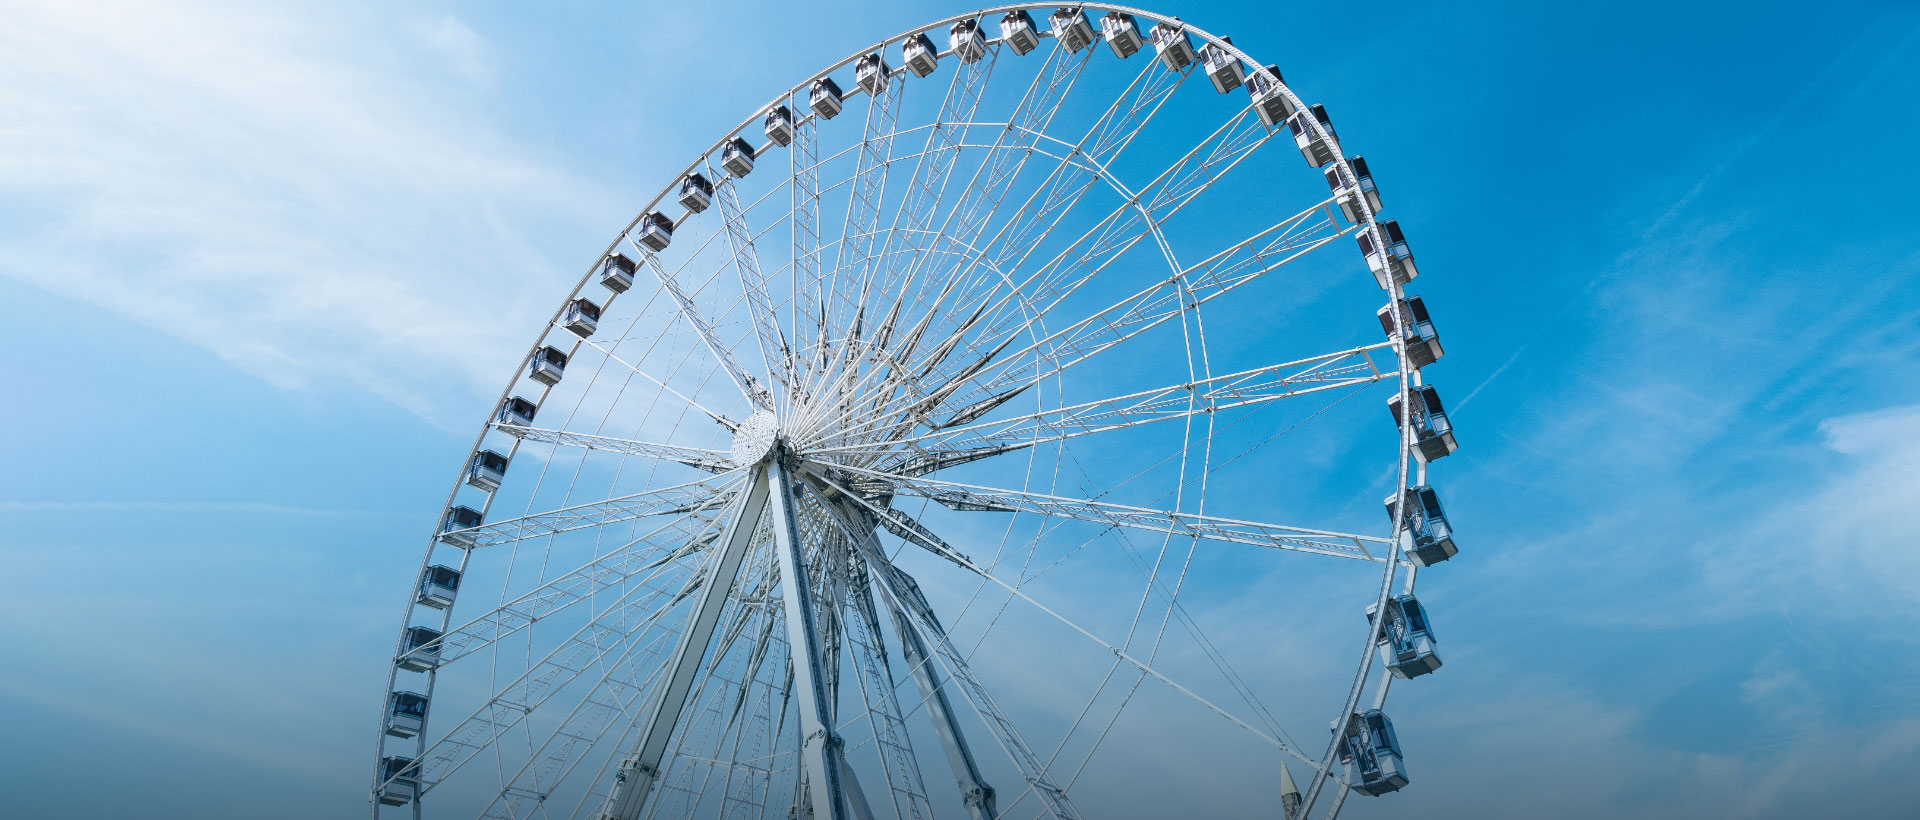 Amusement Park Ferris Wheel Rides for Sale